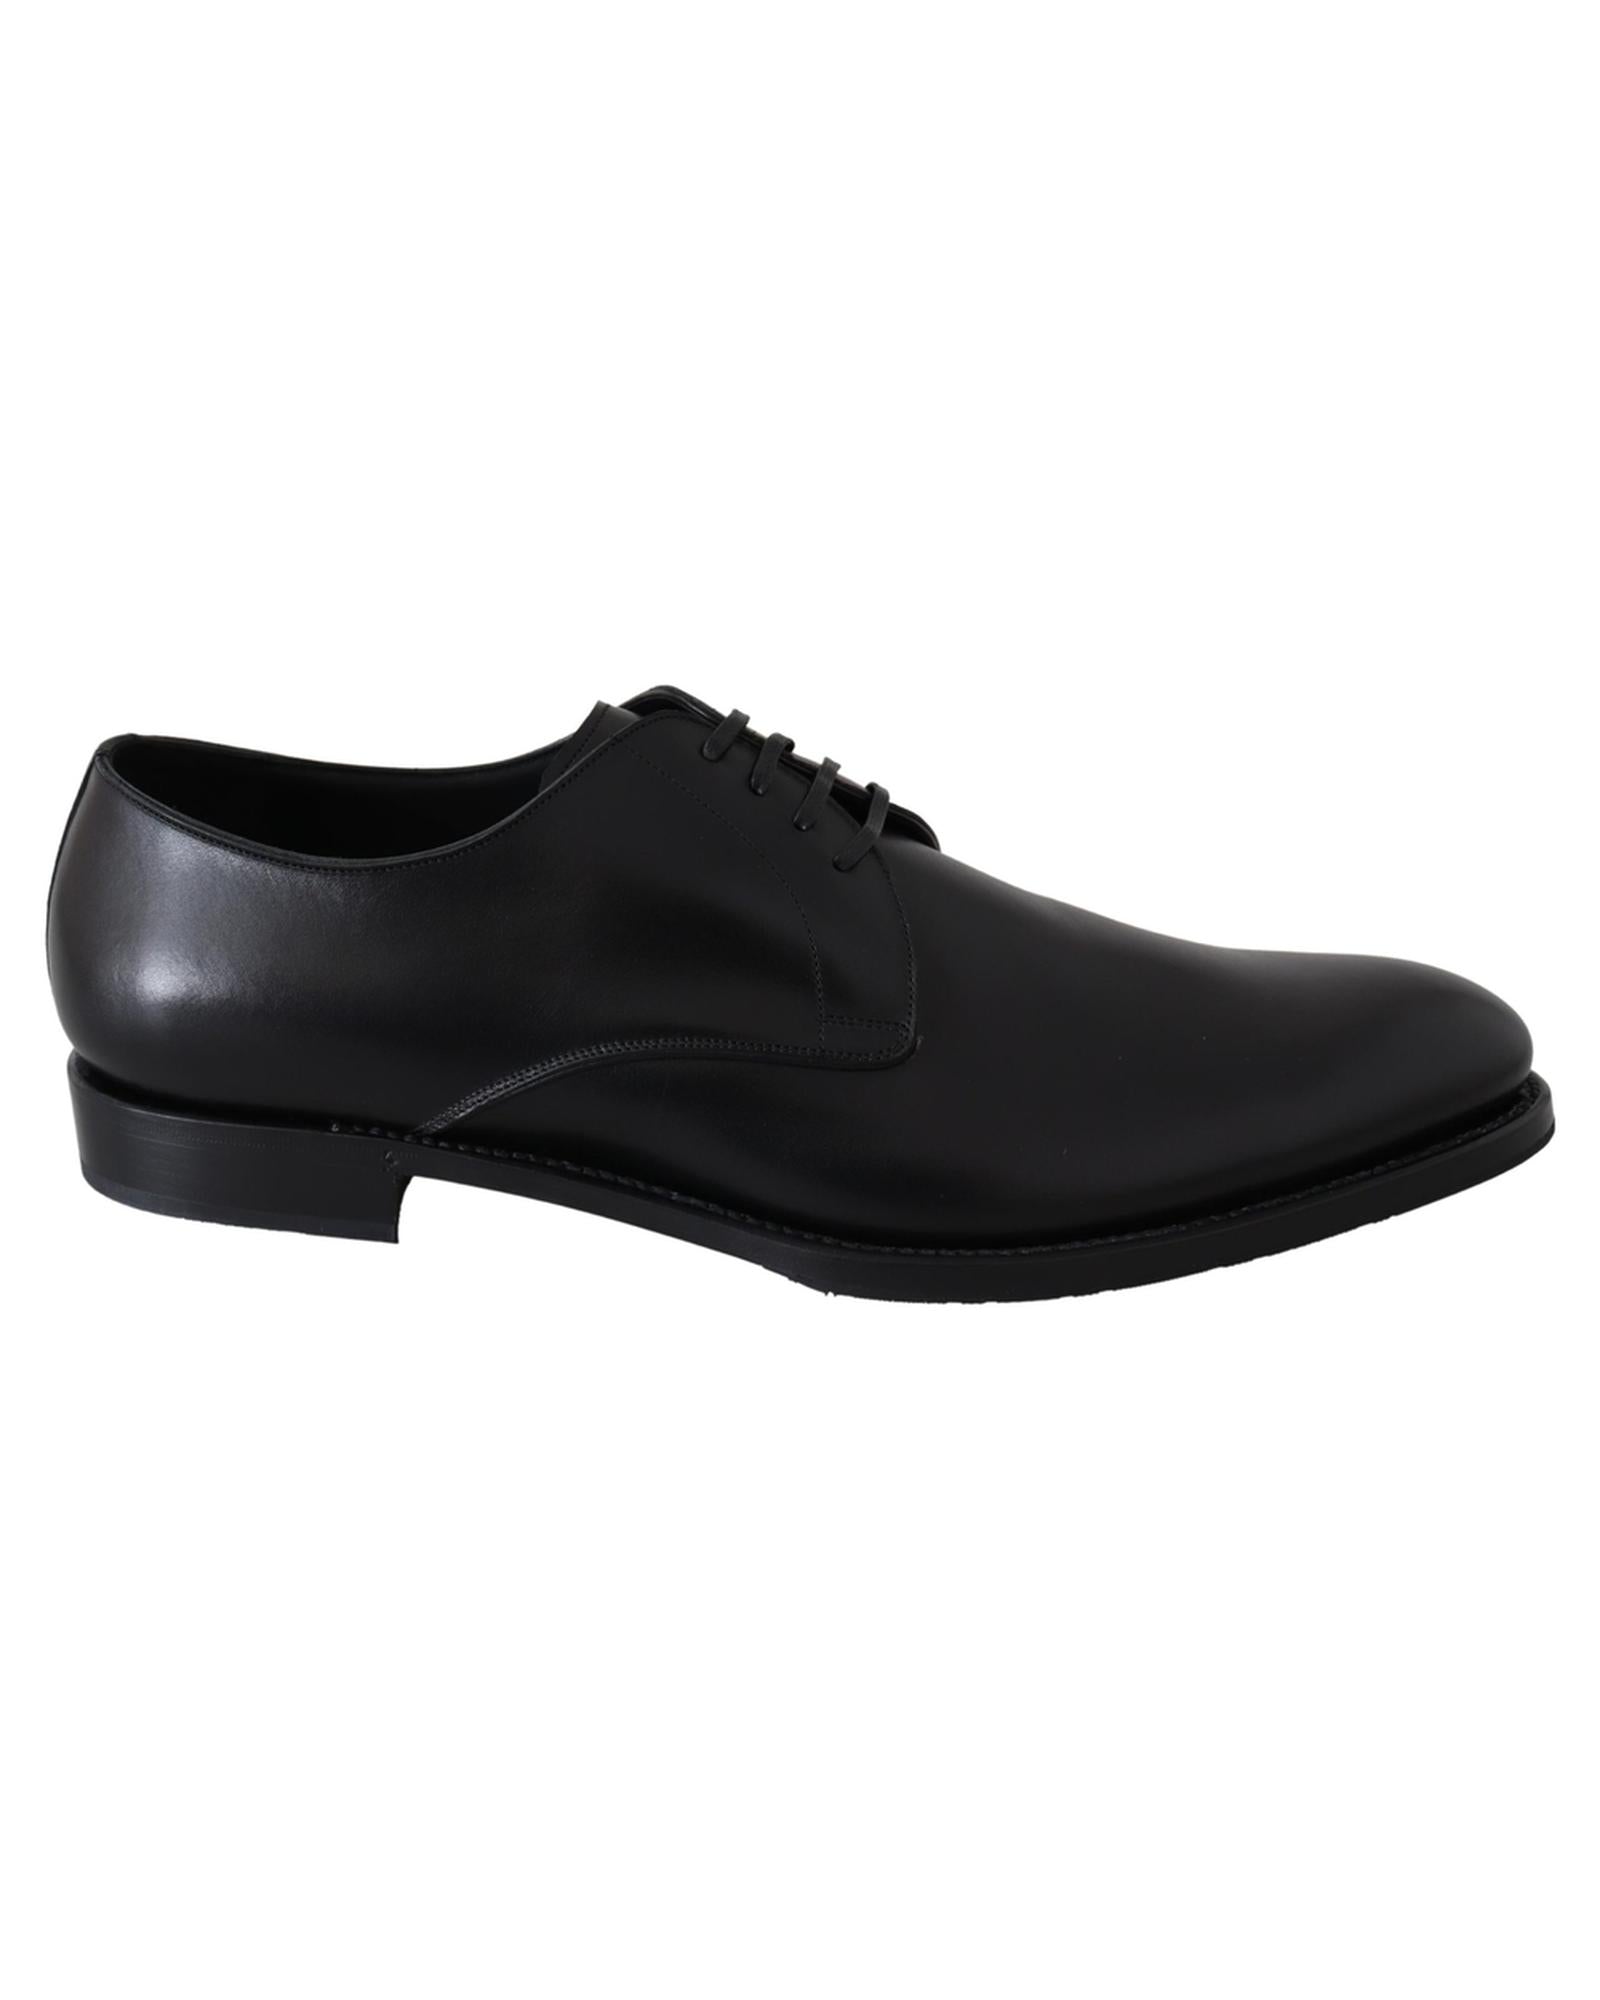 Handcrafted Black Leather Derby Dress Formal Shoes 39 EU Men